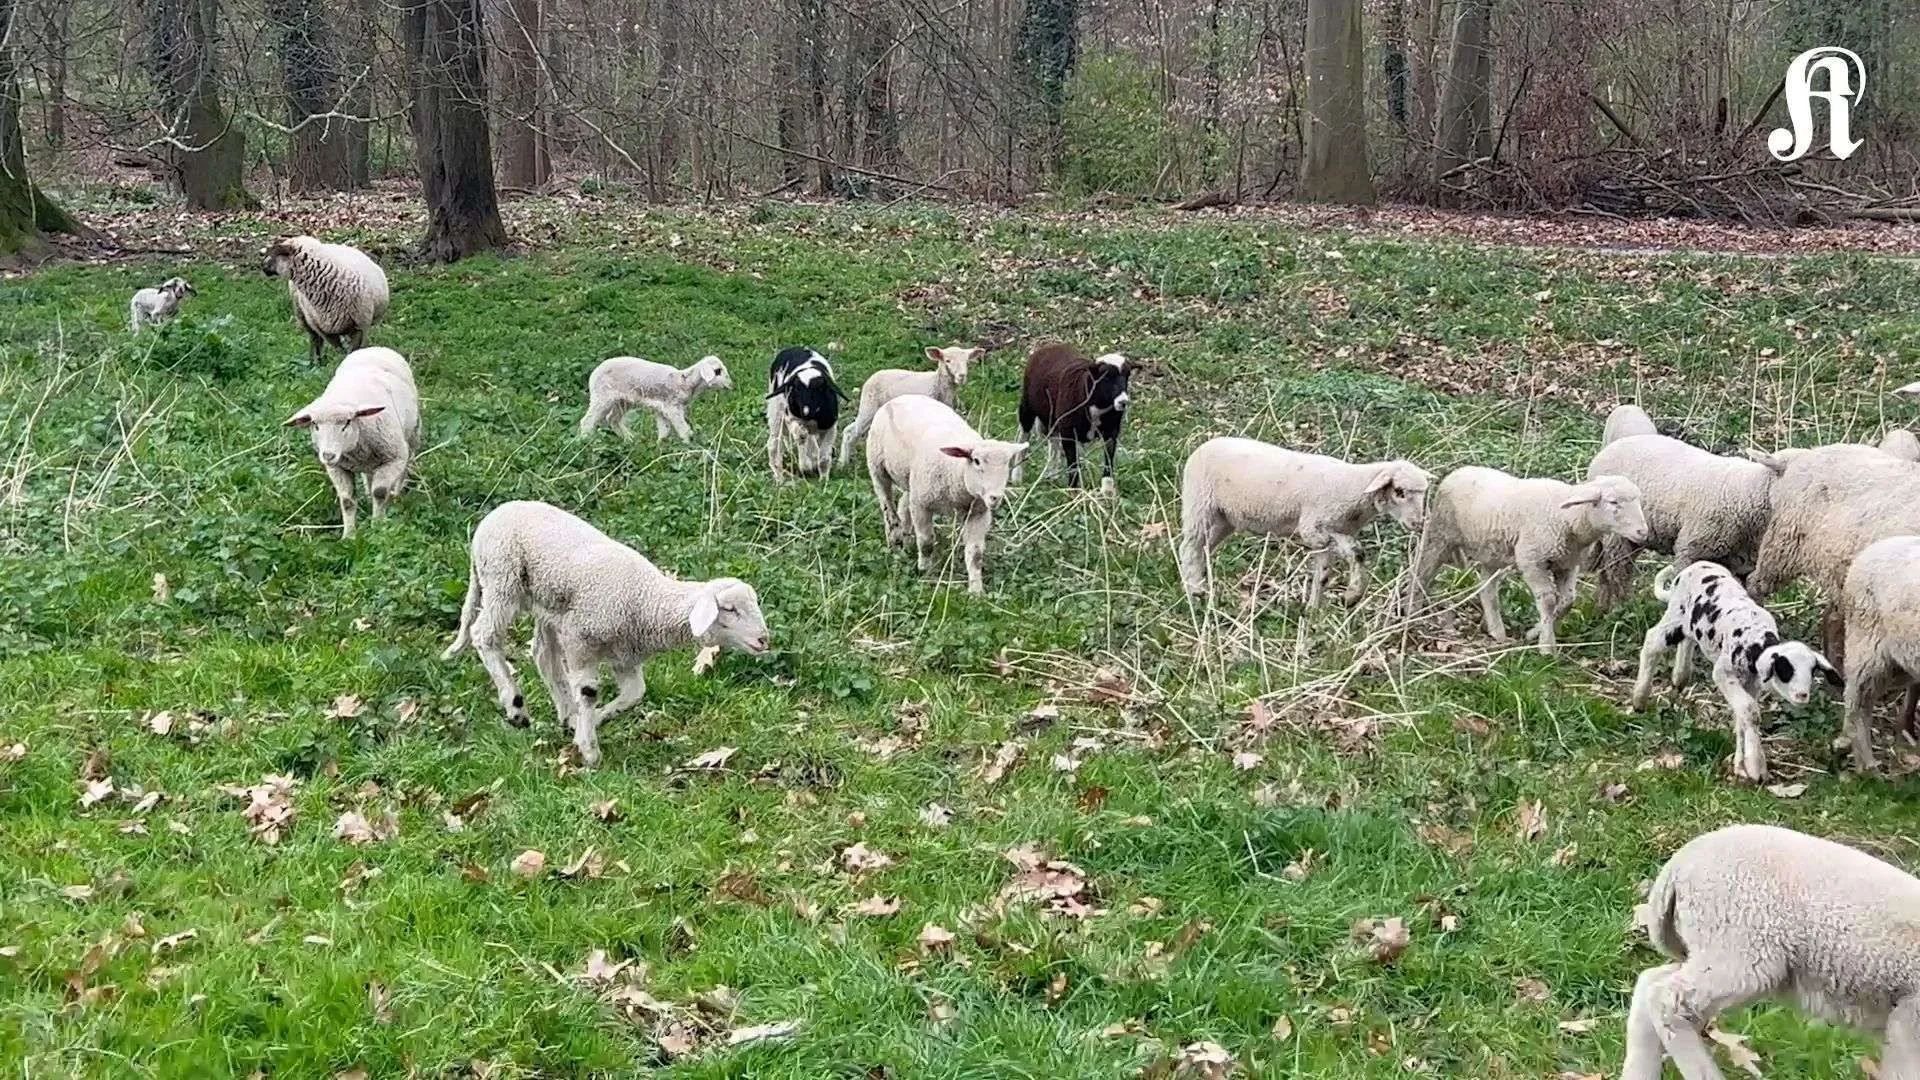 Les quelques 300 moutons de la ceinture verte de Cologne n'ont en fait qu'une seule raison d'être : manger et couper les prairies avec persévérance.